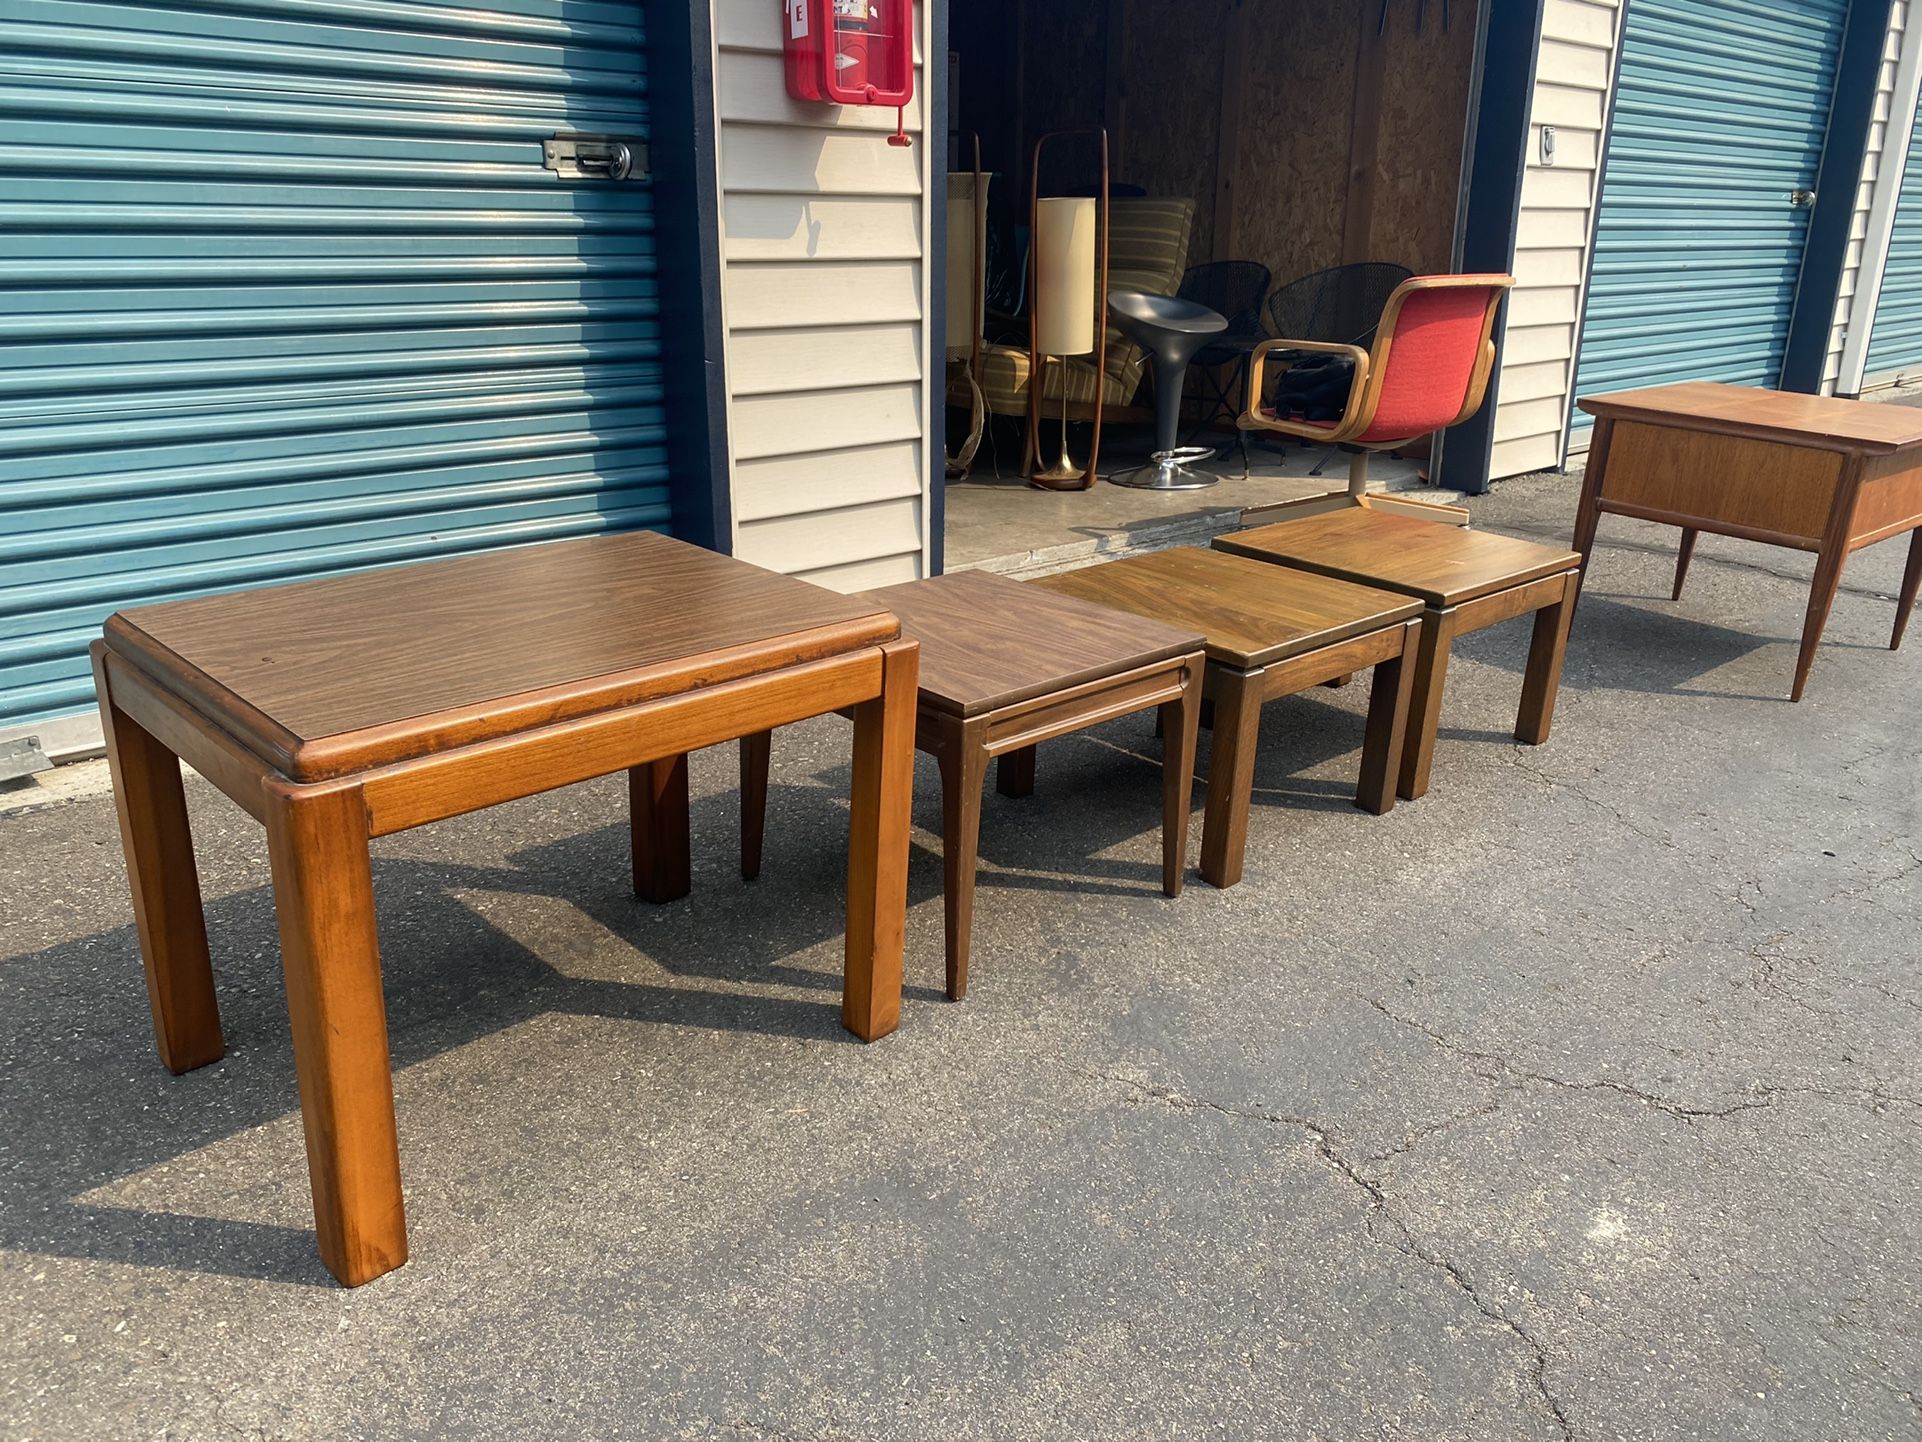 4 Vintage Side Tables...LANE, MERSMAN, BISSMAN?